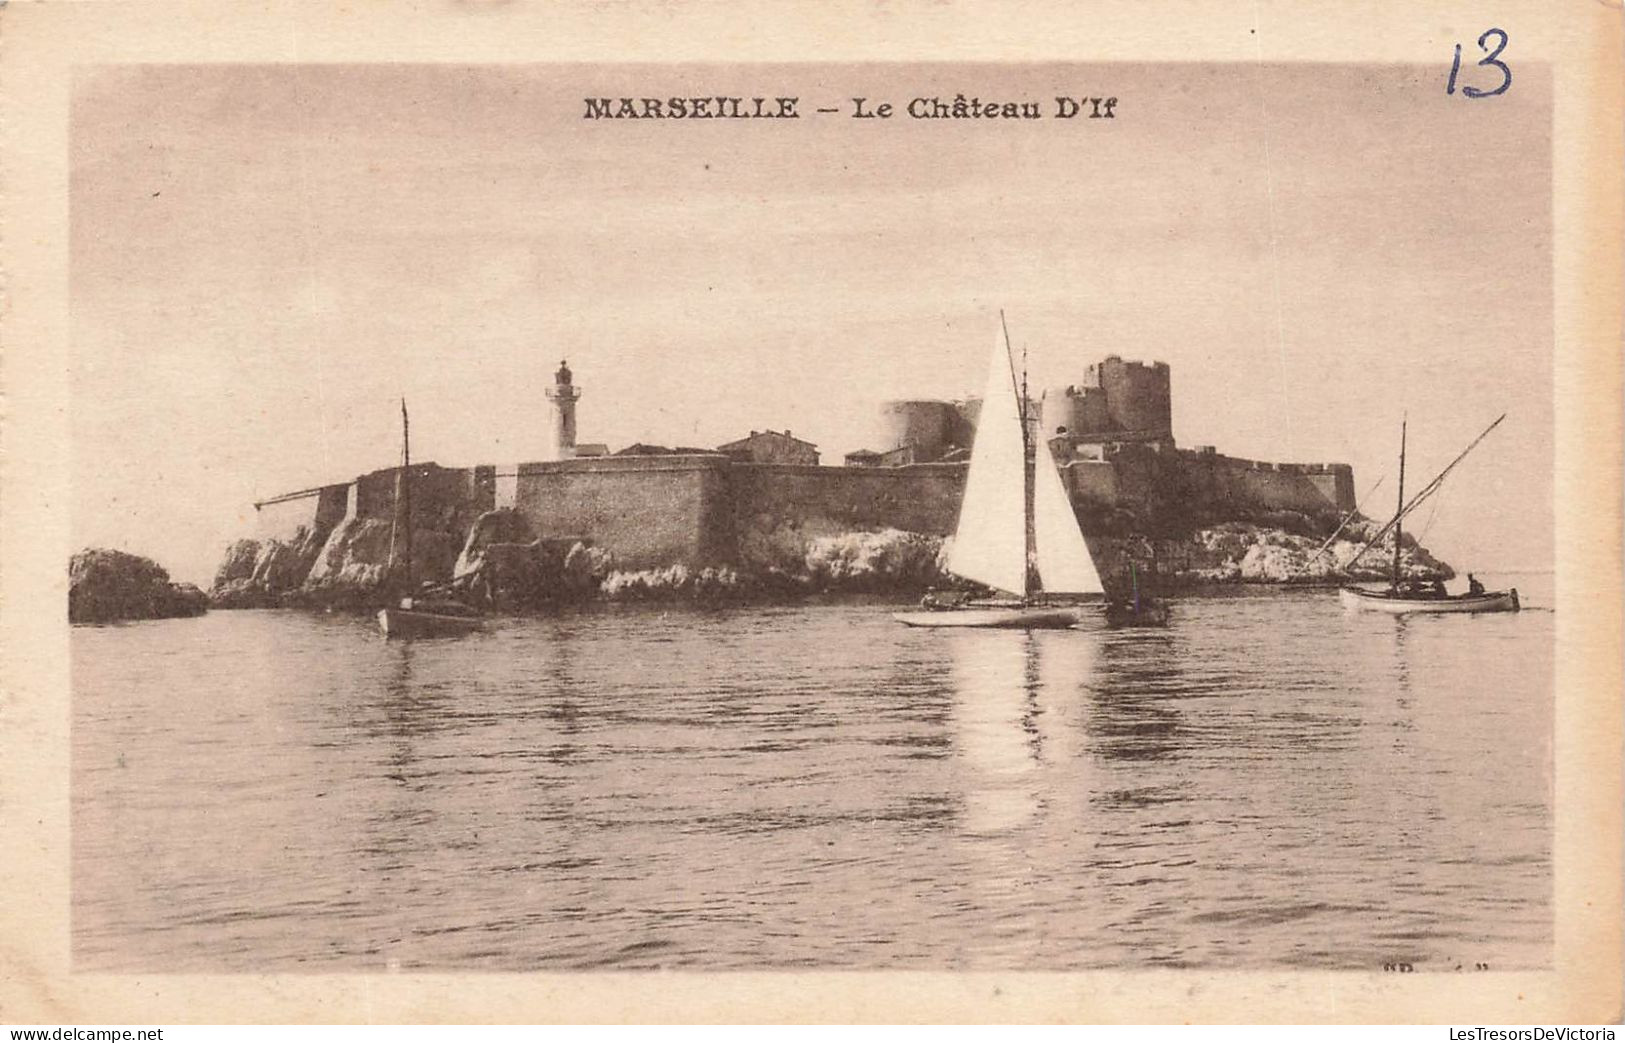 FRANCE - Marseille - Vue Au Loin De Château D'If - Des Bateaux Au Alentour - Carte Postale Ancienne - Château D'If, Frioul, Iles ...